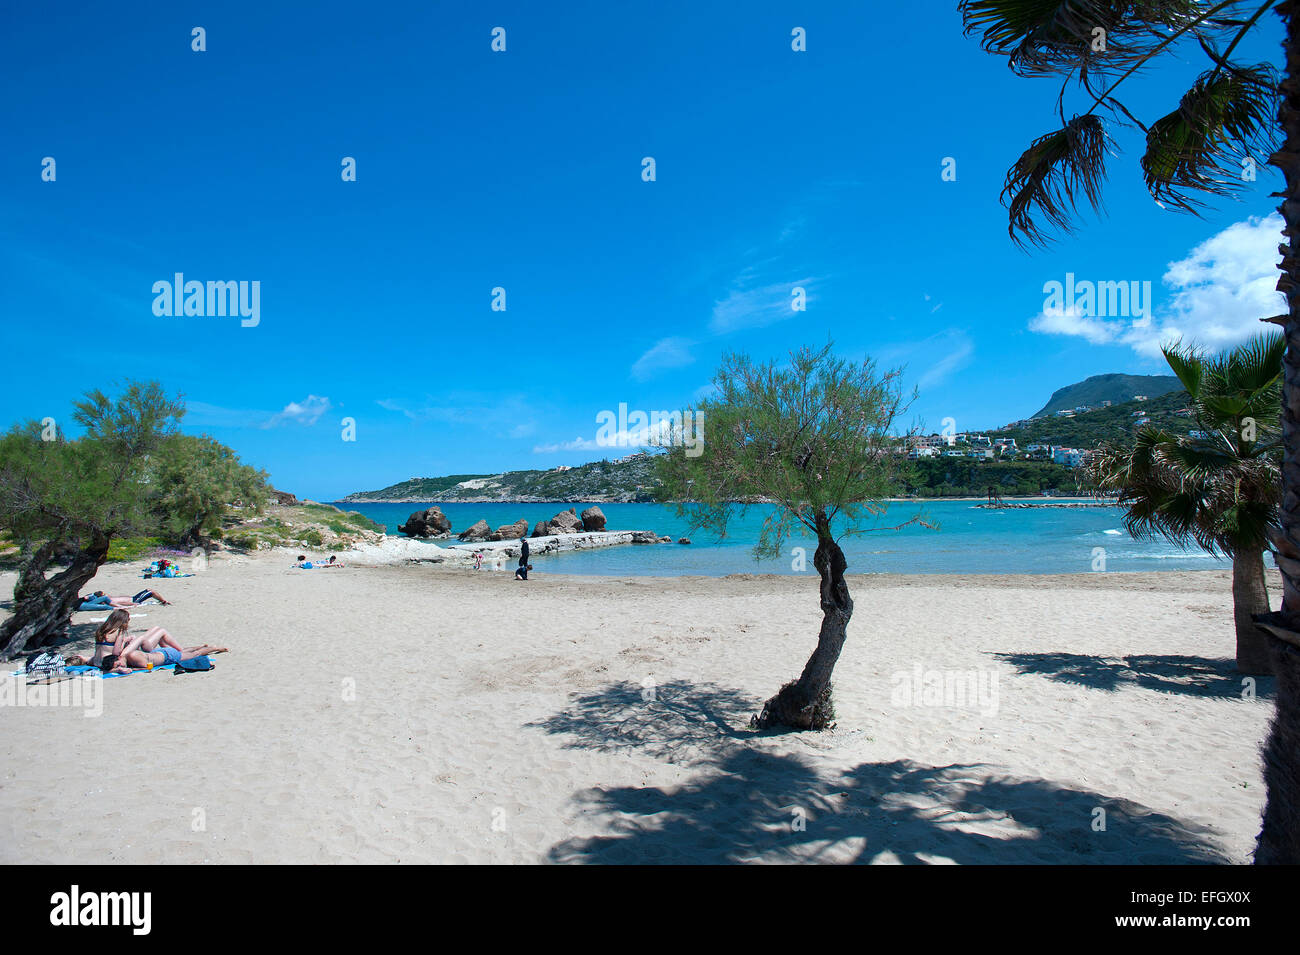 Almyrida Beach, Creta, Grecia Foto de stock